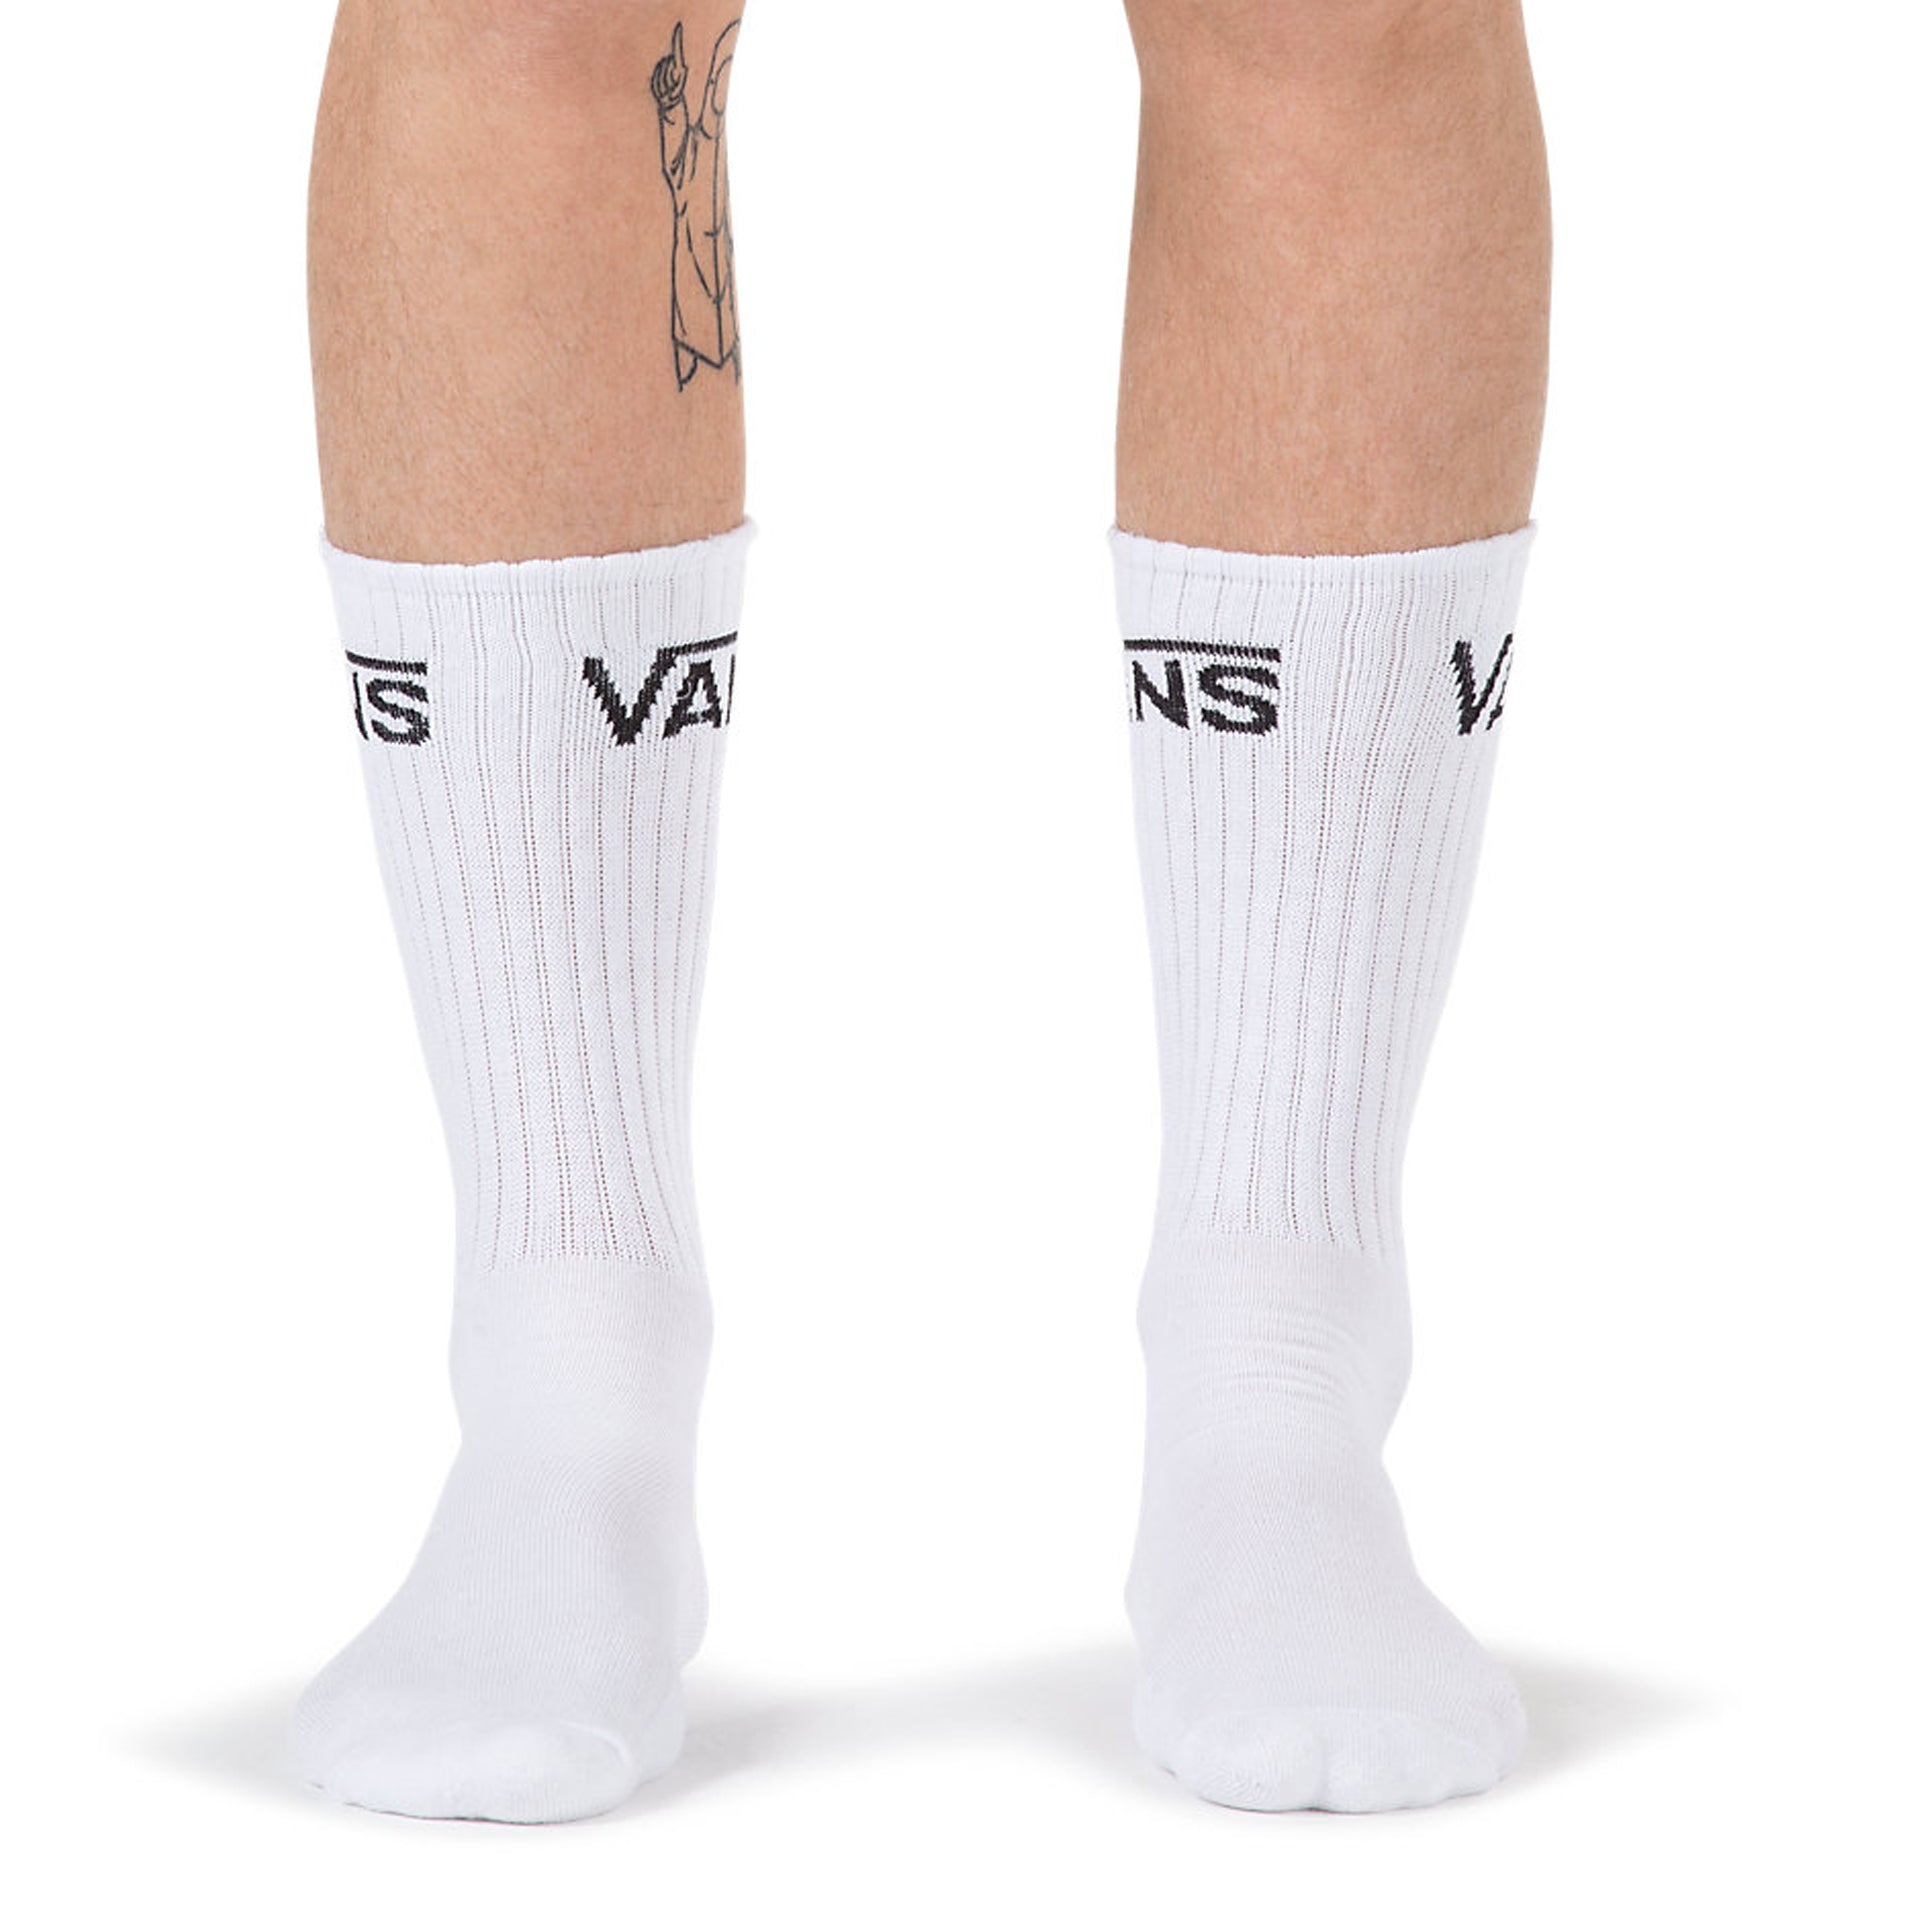 vans socks white